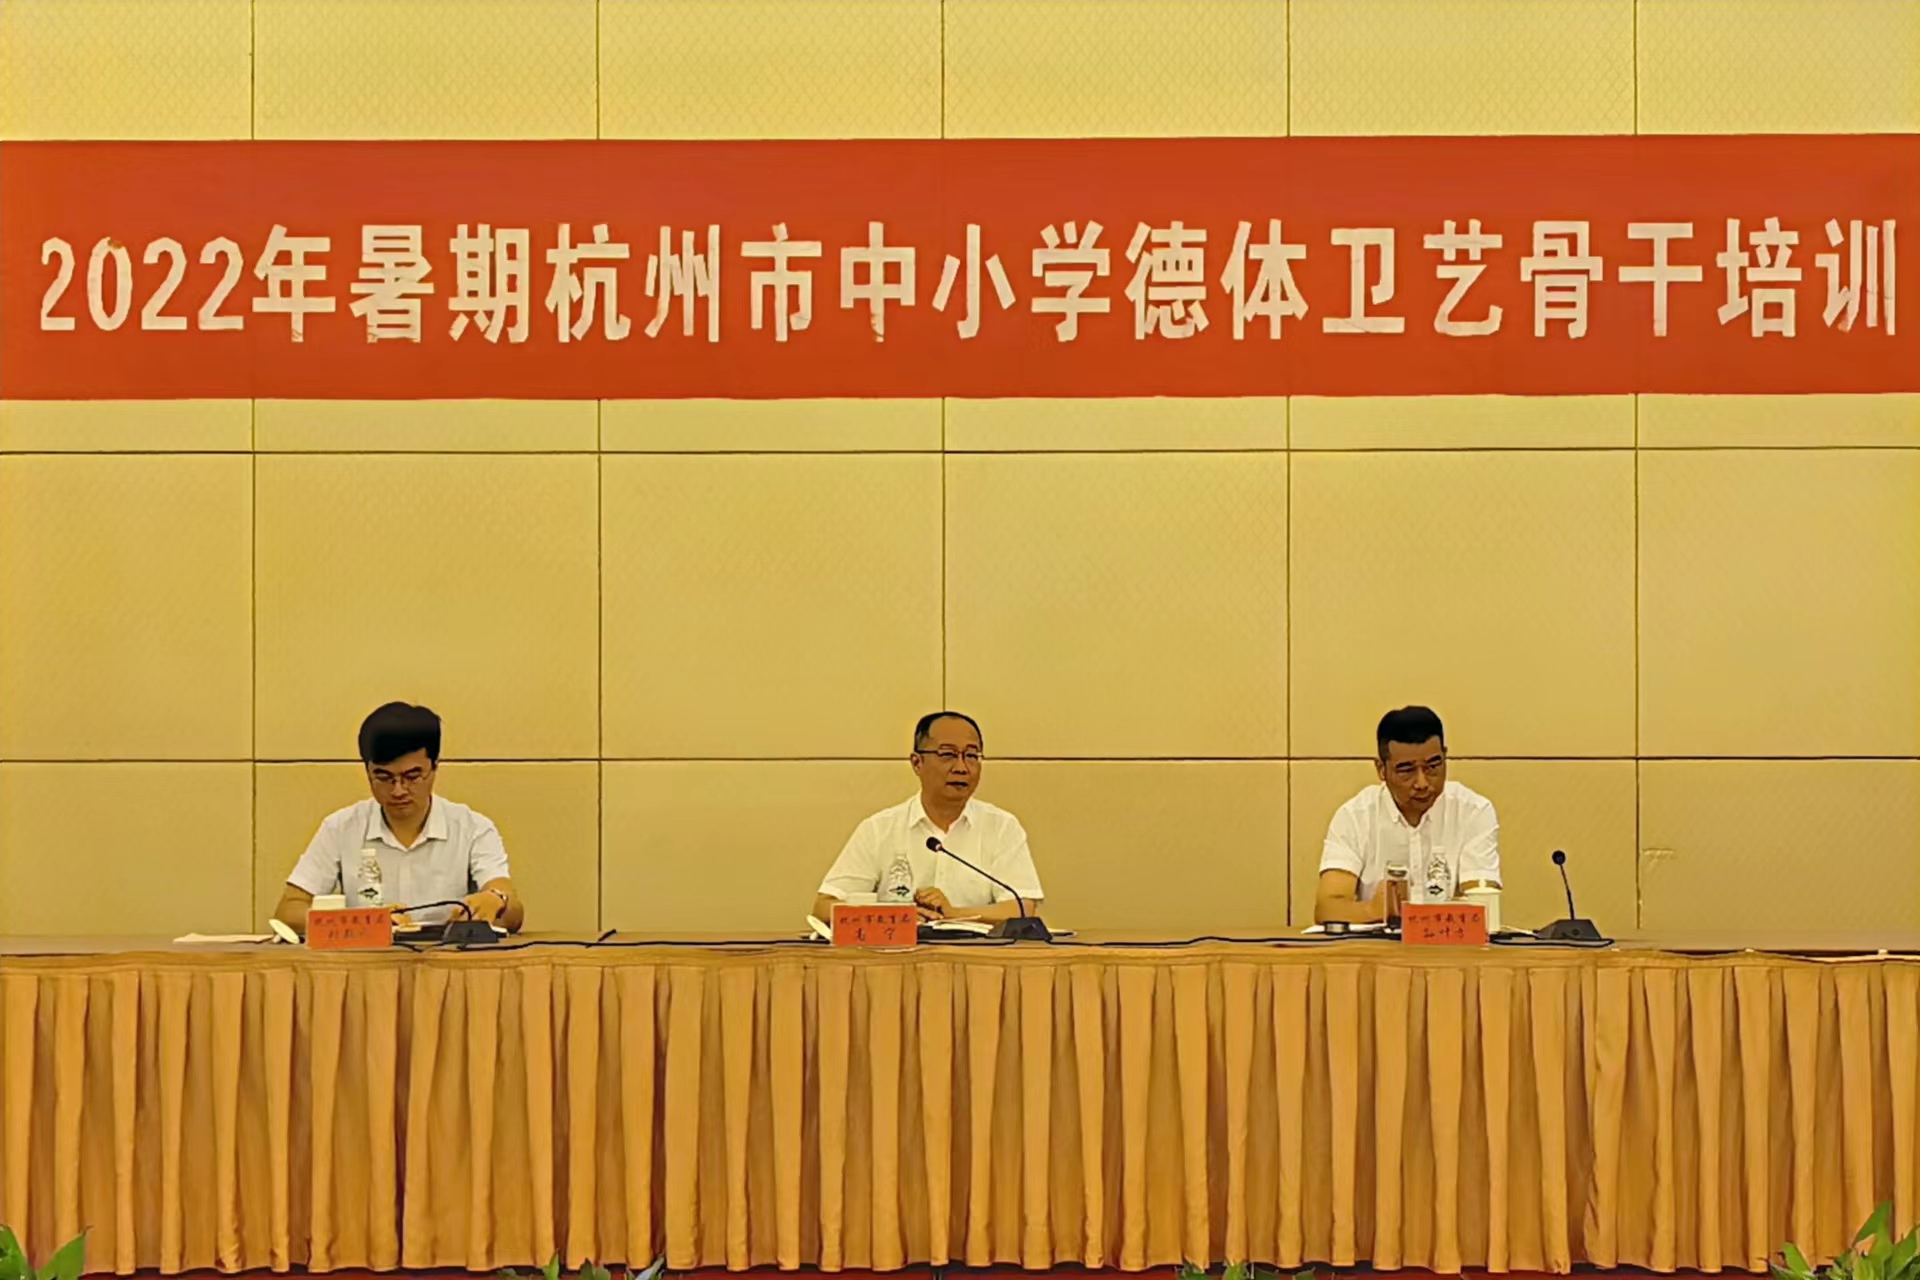 2022年暑期杭州市中小学德体卫艺骨干培训会议圆满举行